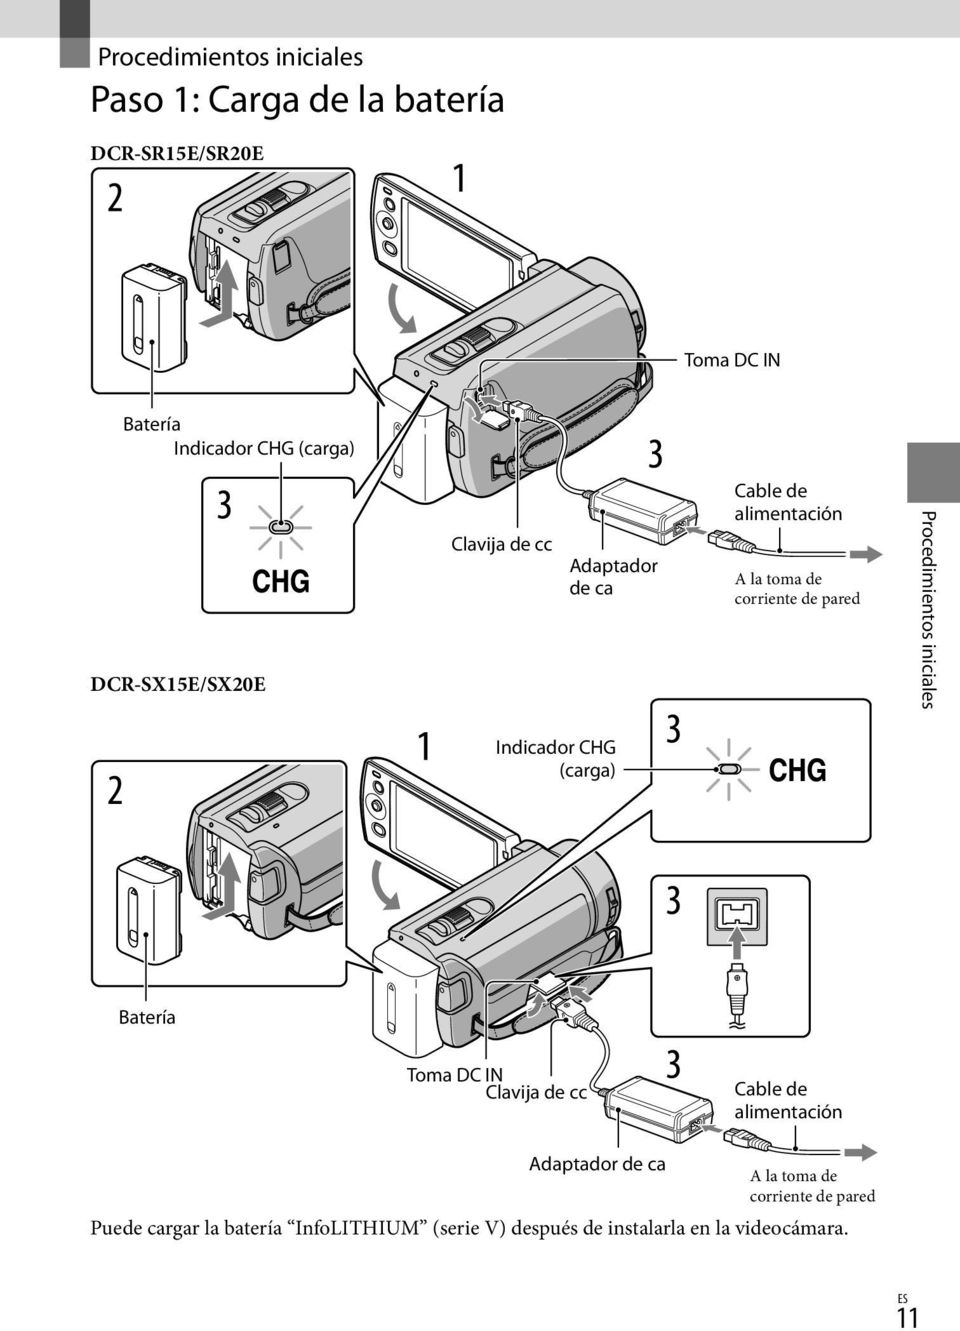 Procedimientos iniciales Indicador CHG (carga) Batería Toma DC IN Clavija de cc Cable de alimentación Adaptador